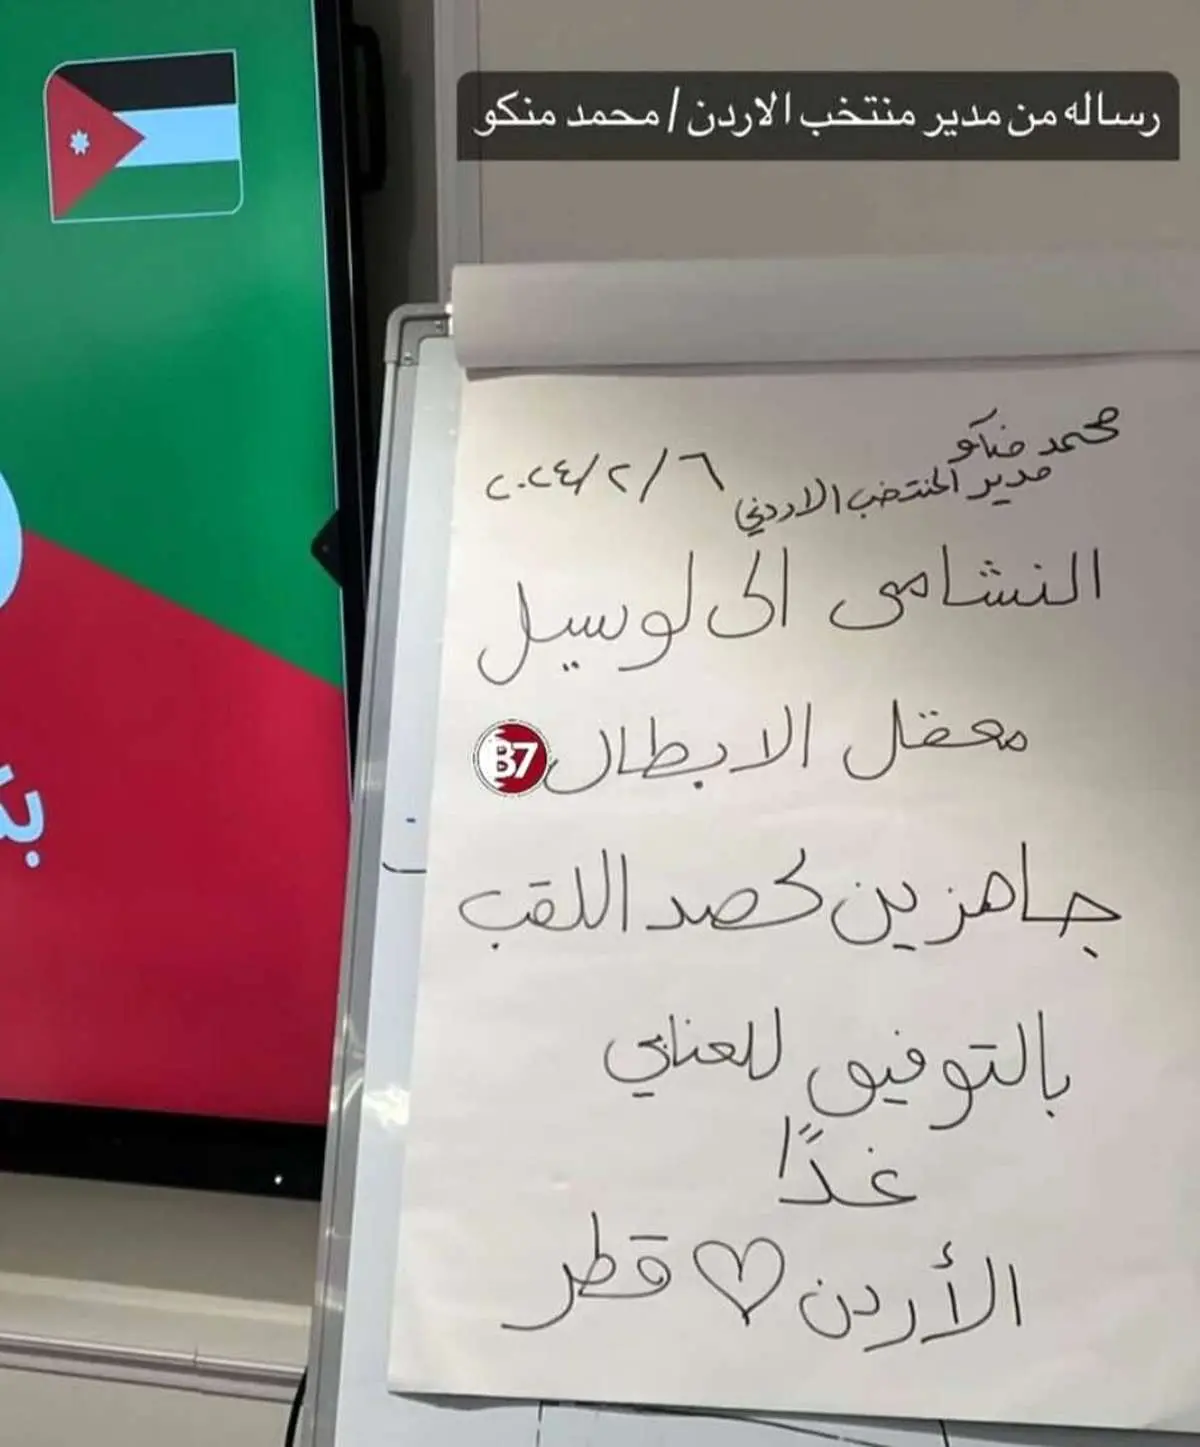  اردن به دنبال یک فینال تمام عربی! / عکس